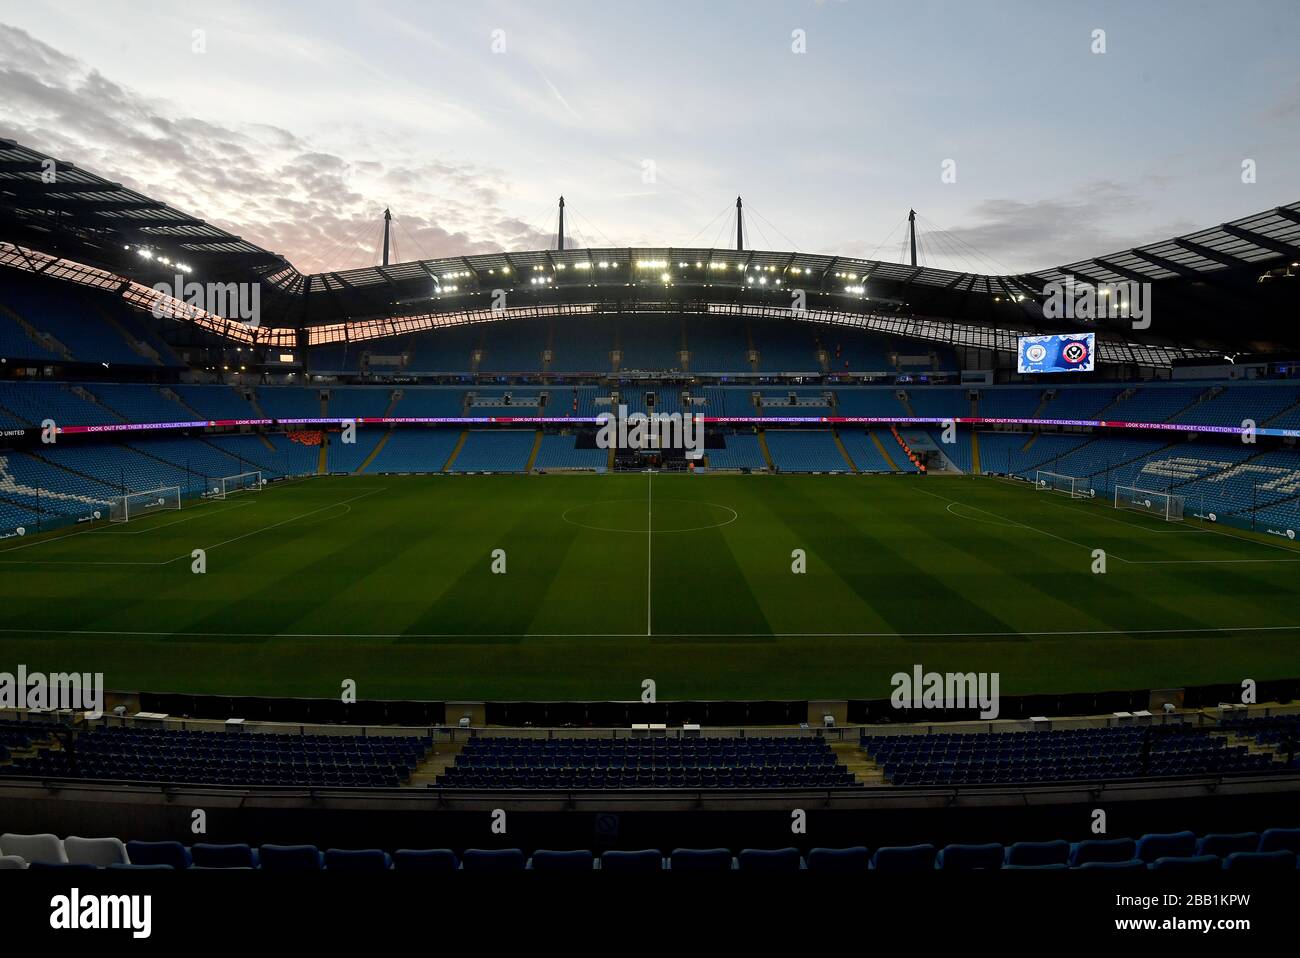 Ein Blick in das Etihad Stadium, während die Sonne vor dem Spiel beginnt zu untergehen Stockfoto